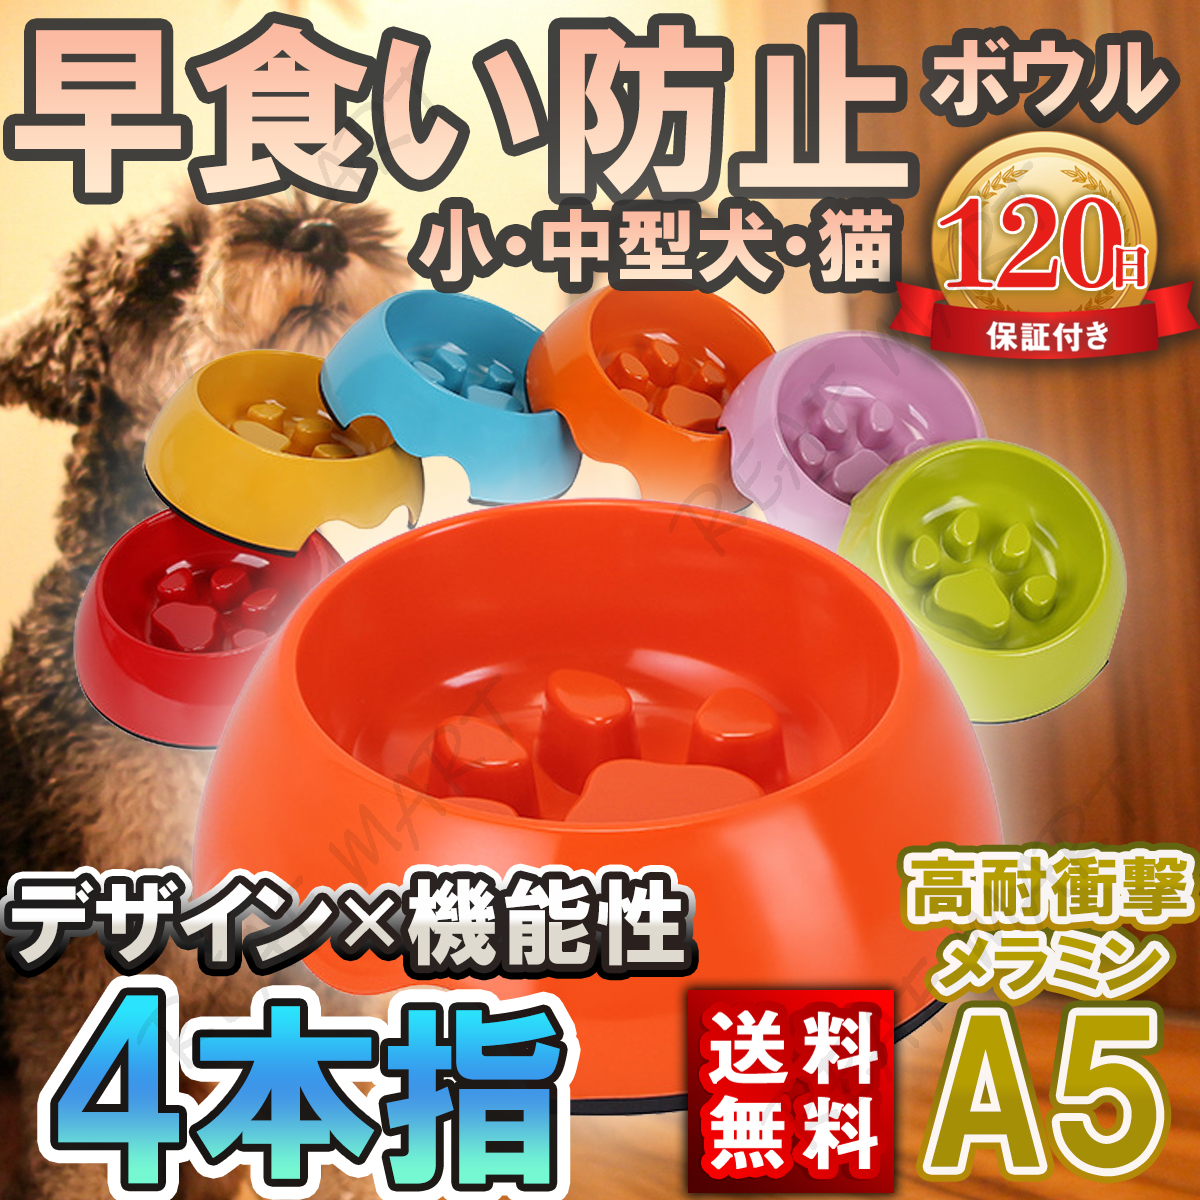 早食い防止 フードボウル 犬 猫 食器 皿 肉球 4本指 小型犬 多機能 おしゃれ 機能性 送料無料 6色 小型犬・猫用 食器、餌やり、水やり用品 